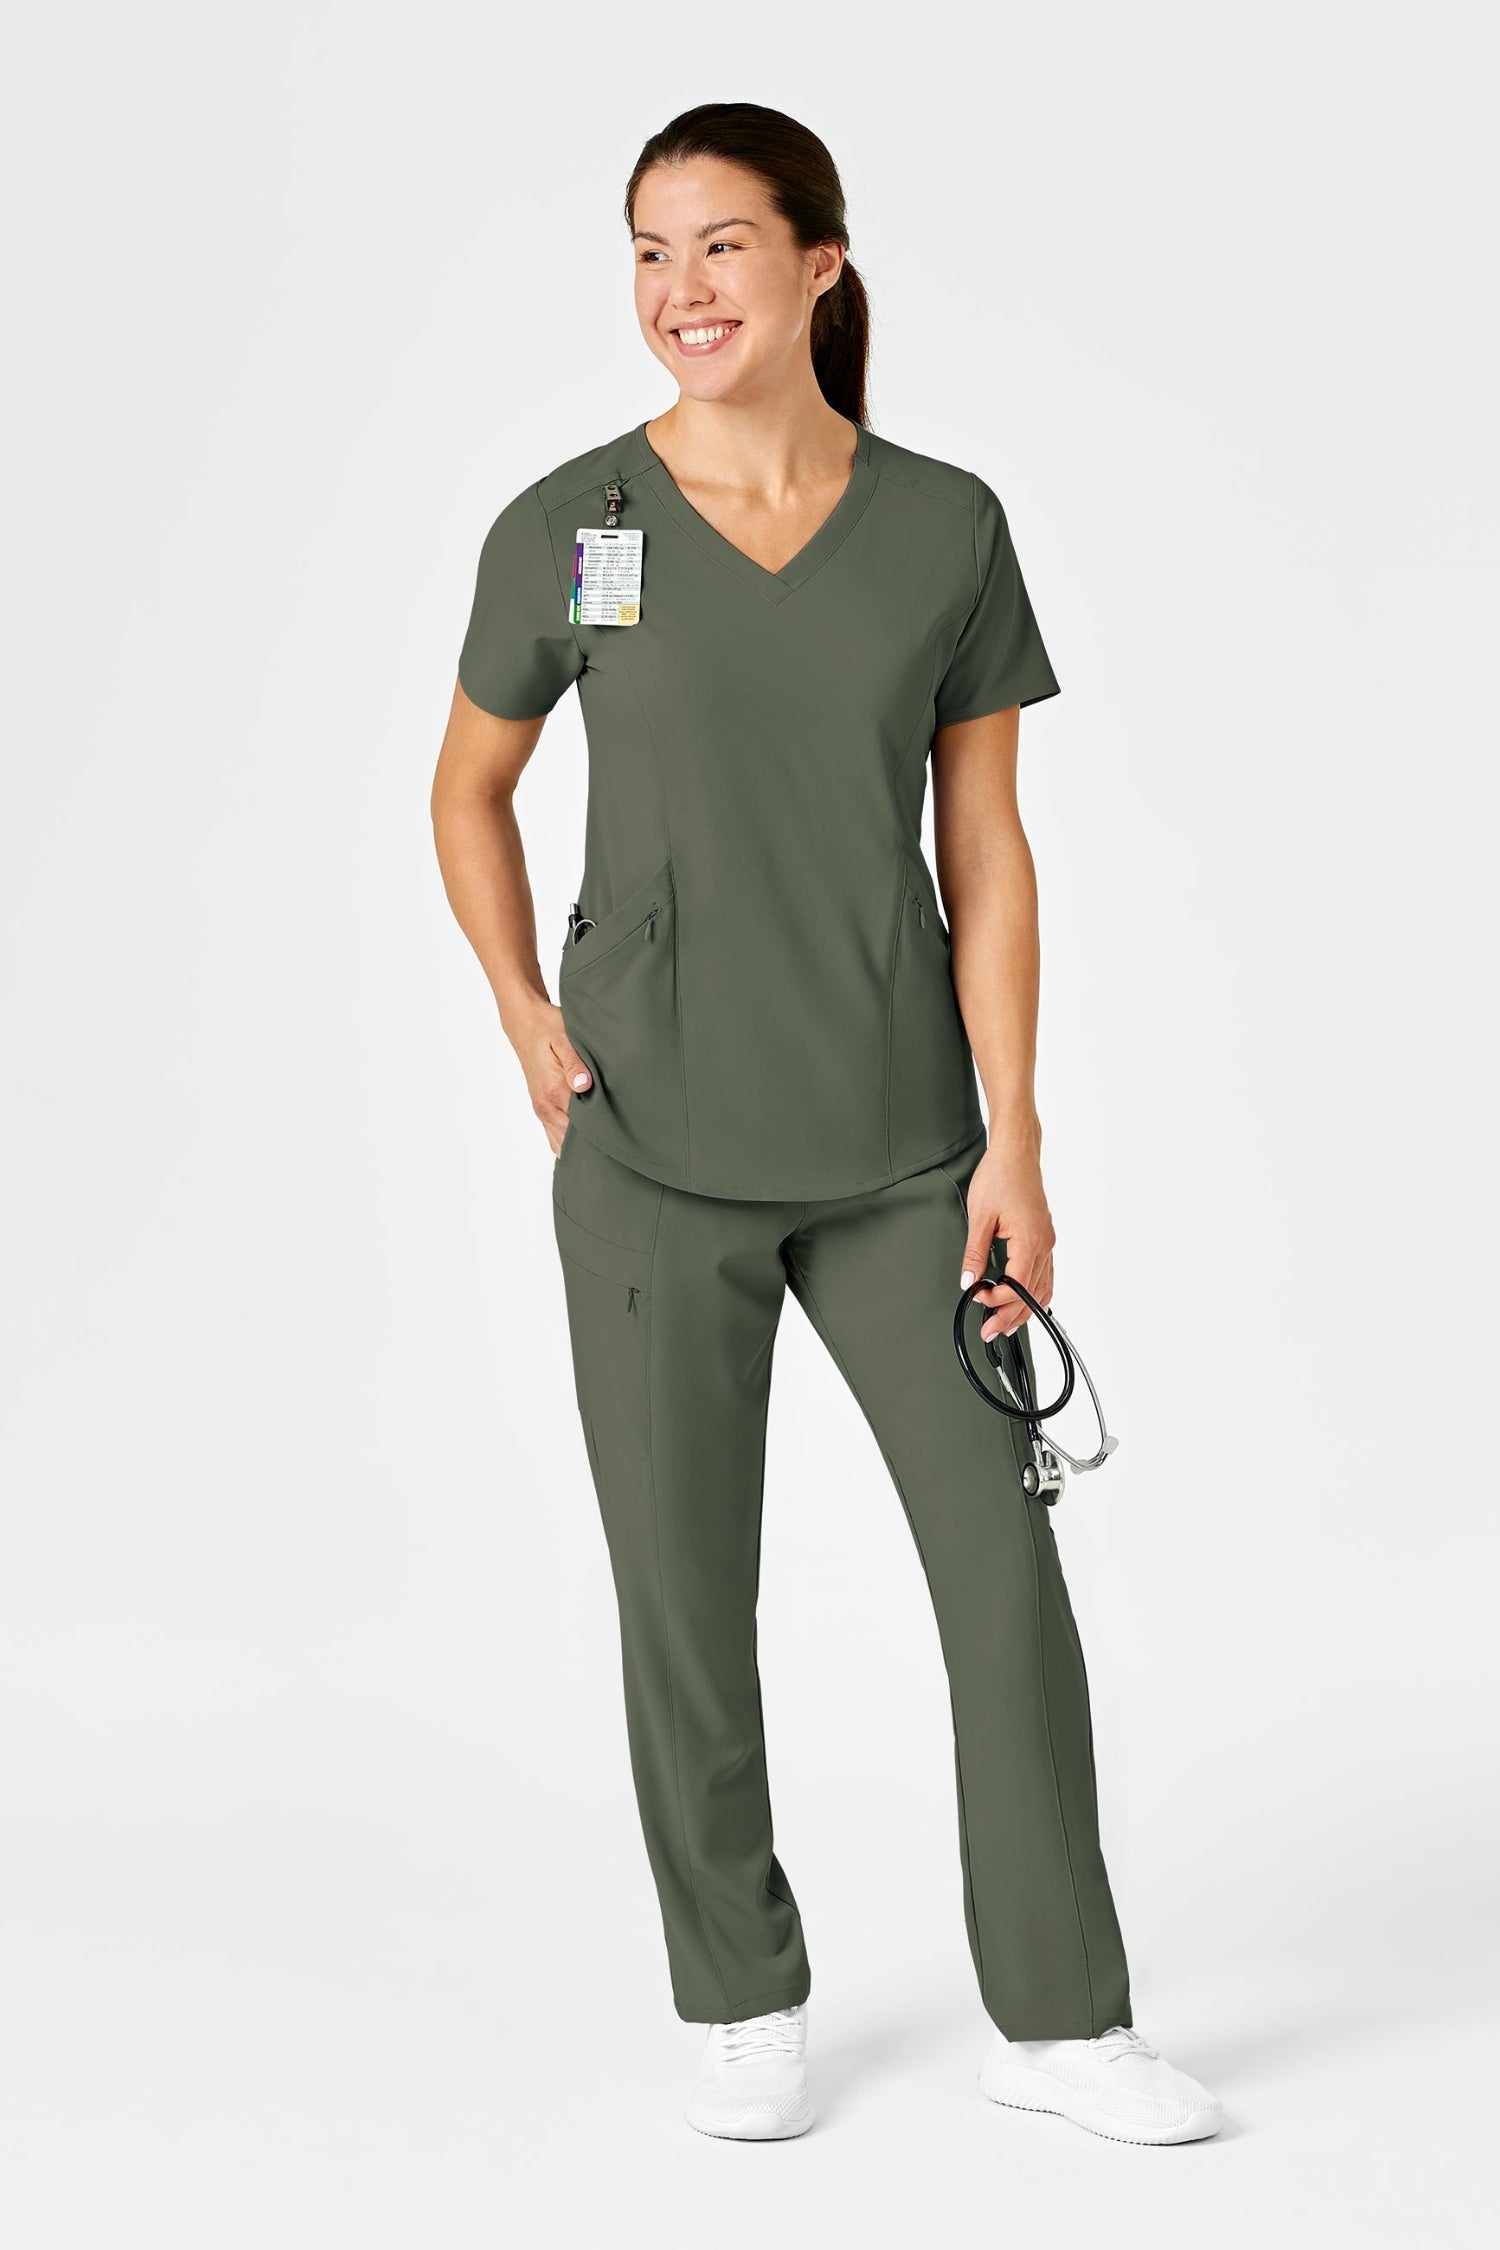 Femme en tenue médicale vert olive en polyester spandex avec poches à fermeture, souriant